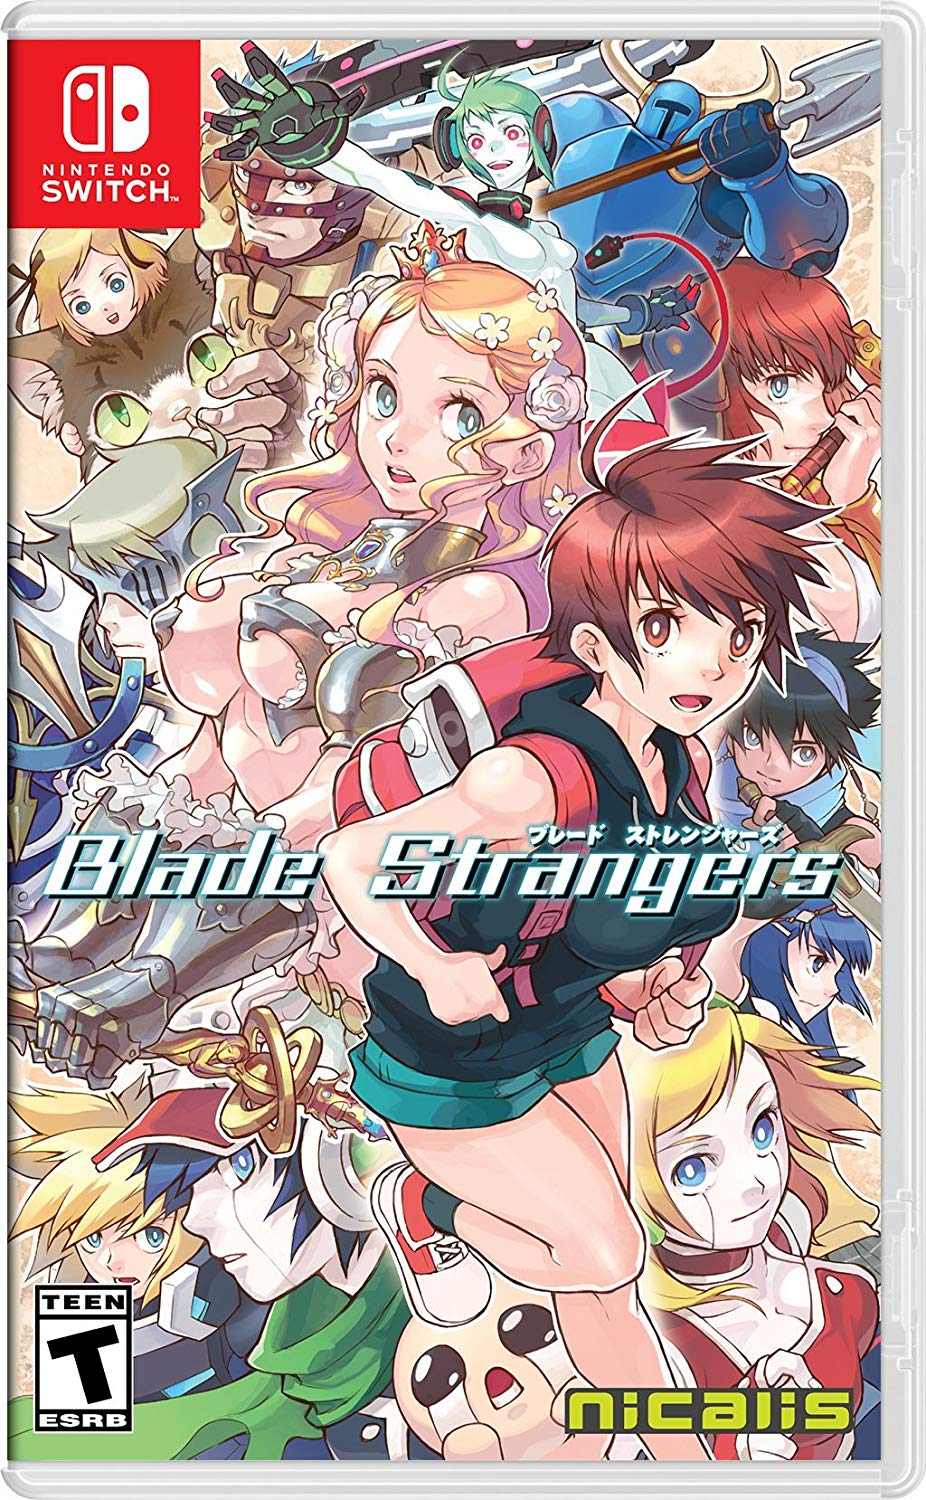 blade-strangers-new-boxart-1.jpg